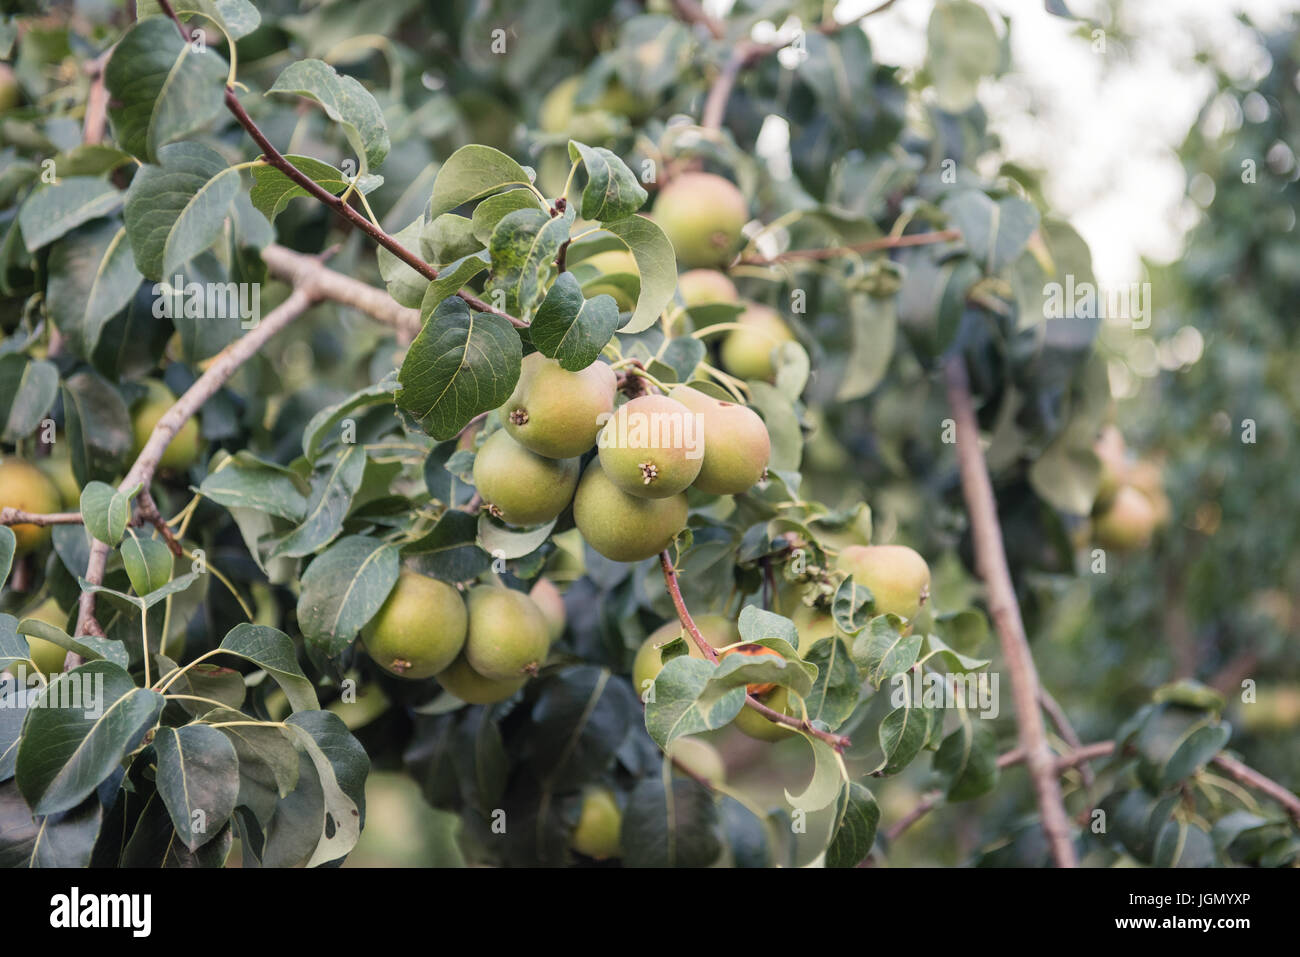 Viele unreife Birne Früchte am Ast mit grünen Blättern, selektiven Fokus Stockfoto